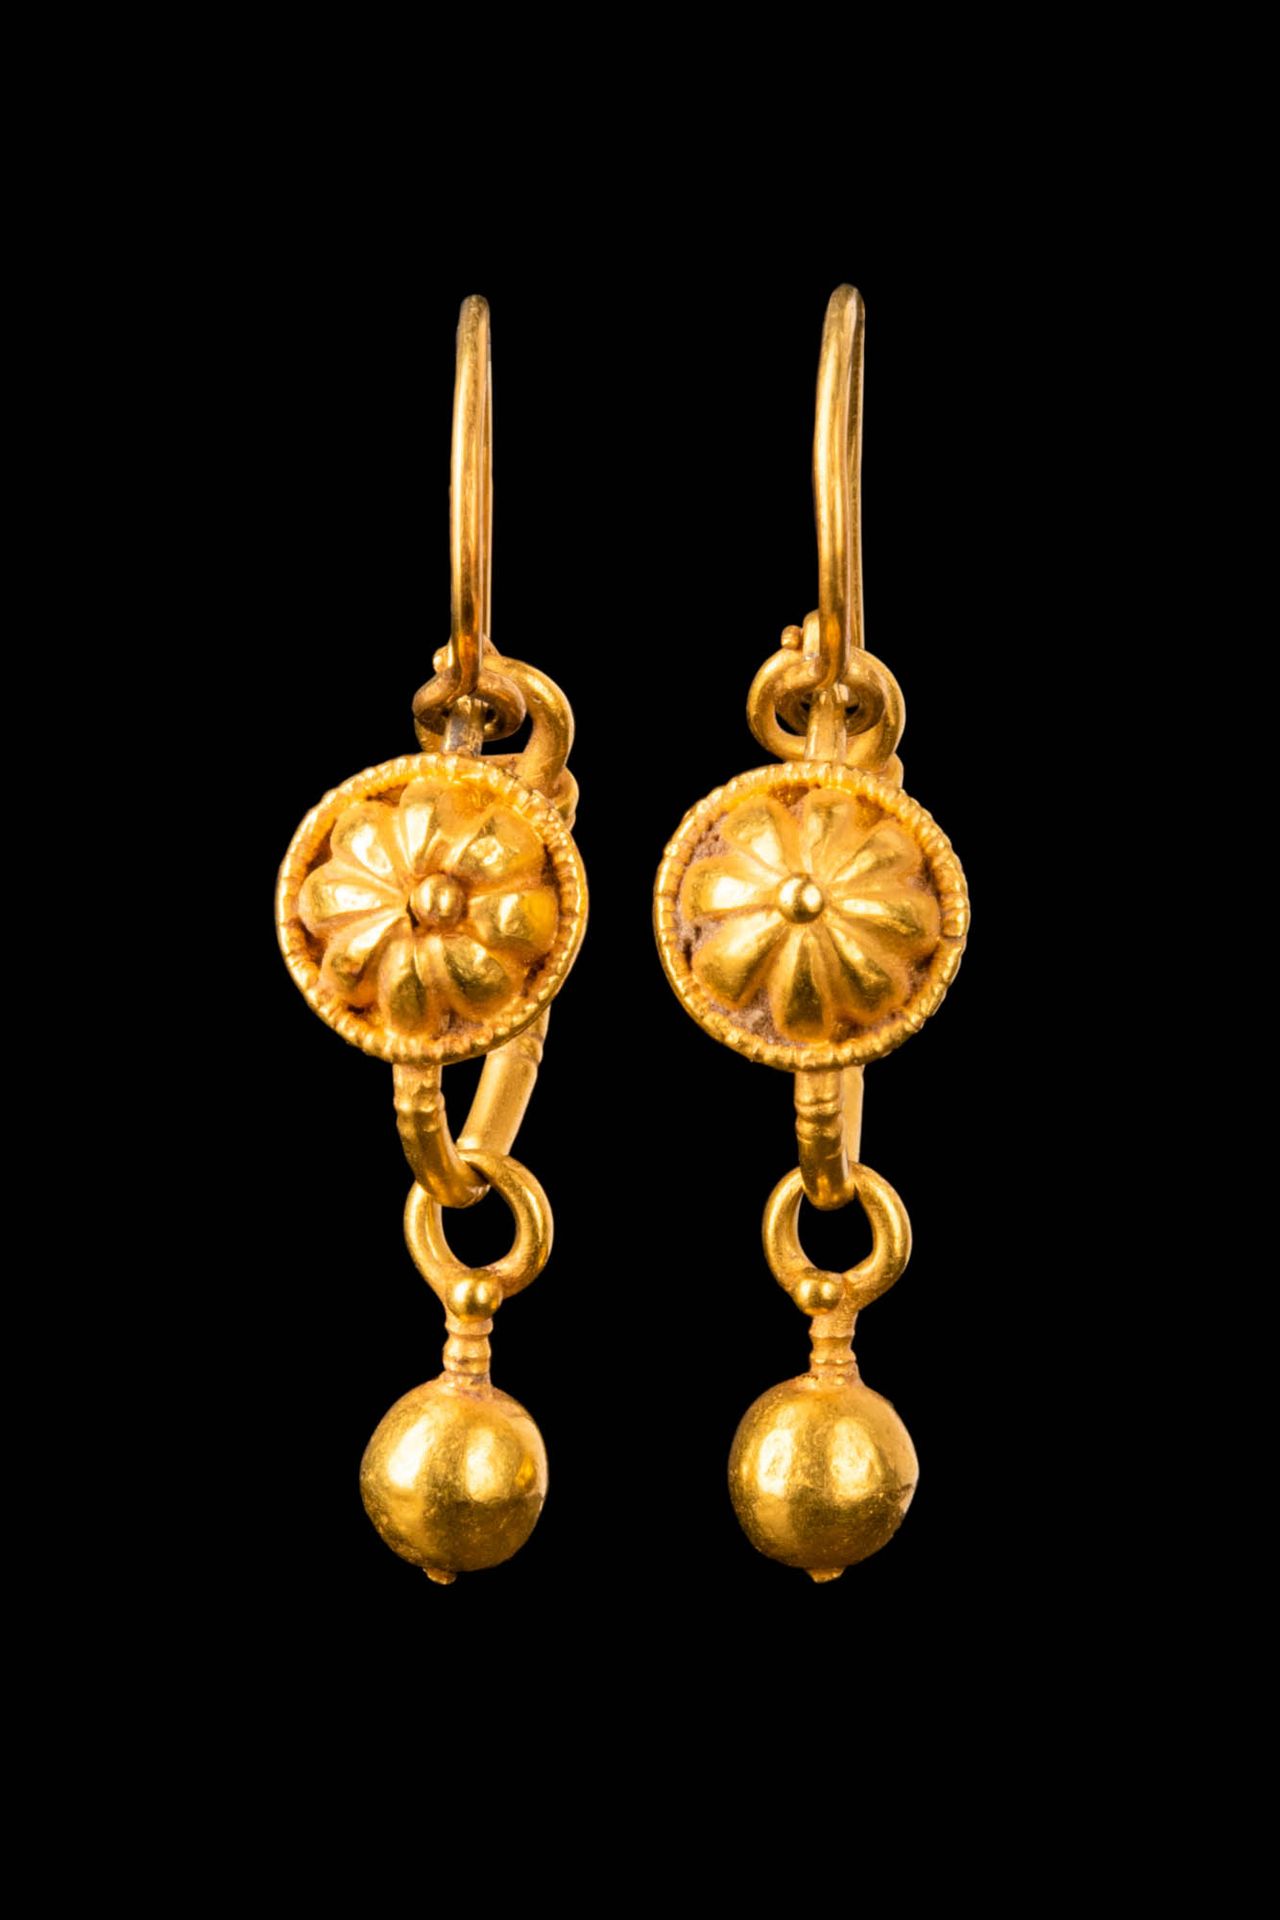 ROMAN GOLD EARRINGS WITH PENDANT Ca. 100 - 200 D.C.
Par de pendientes romanos de&hellip;